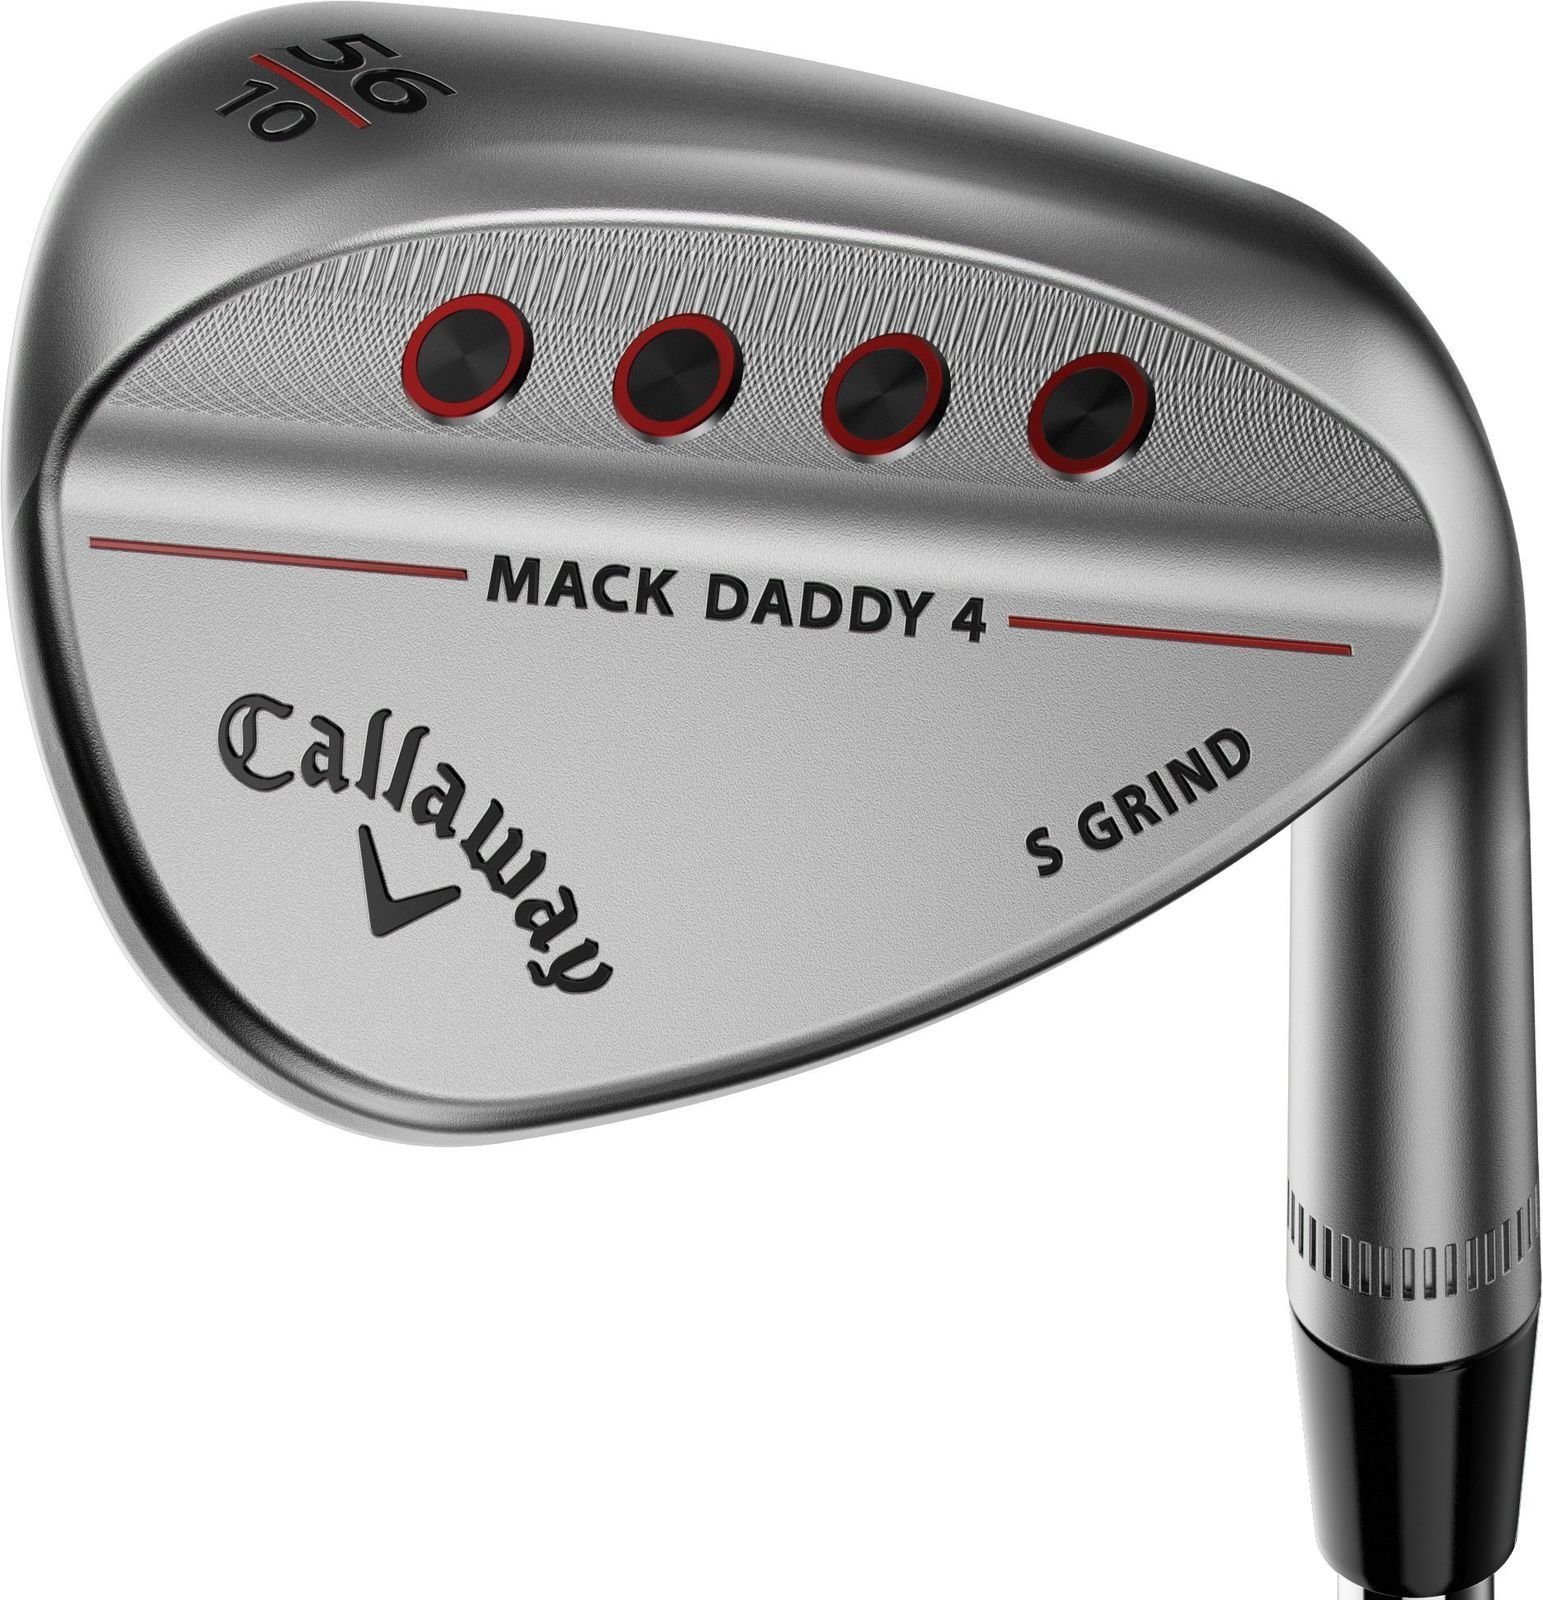 Λέσχες γκολφ - wedge Callaway Mack Daddy 4 Chrome Wedge 60-12 W-Grind Right Hand